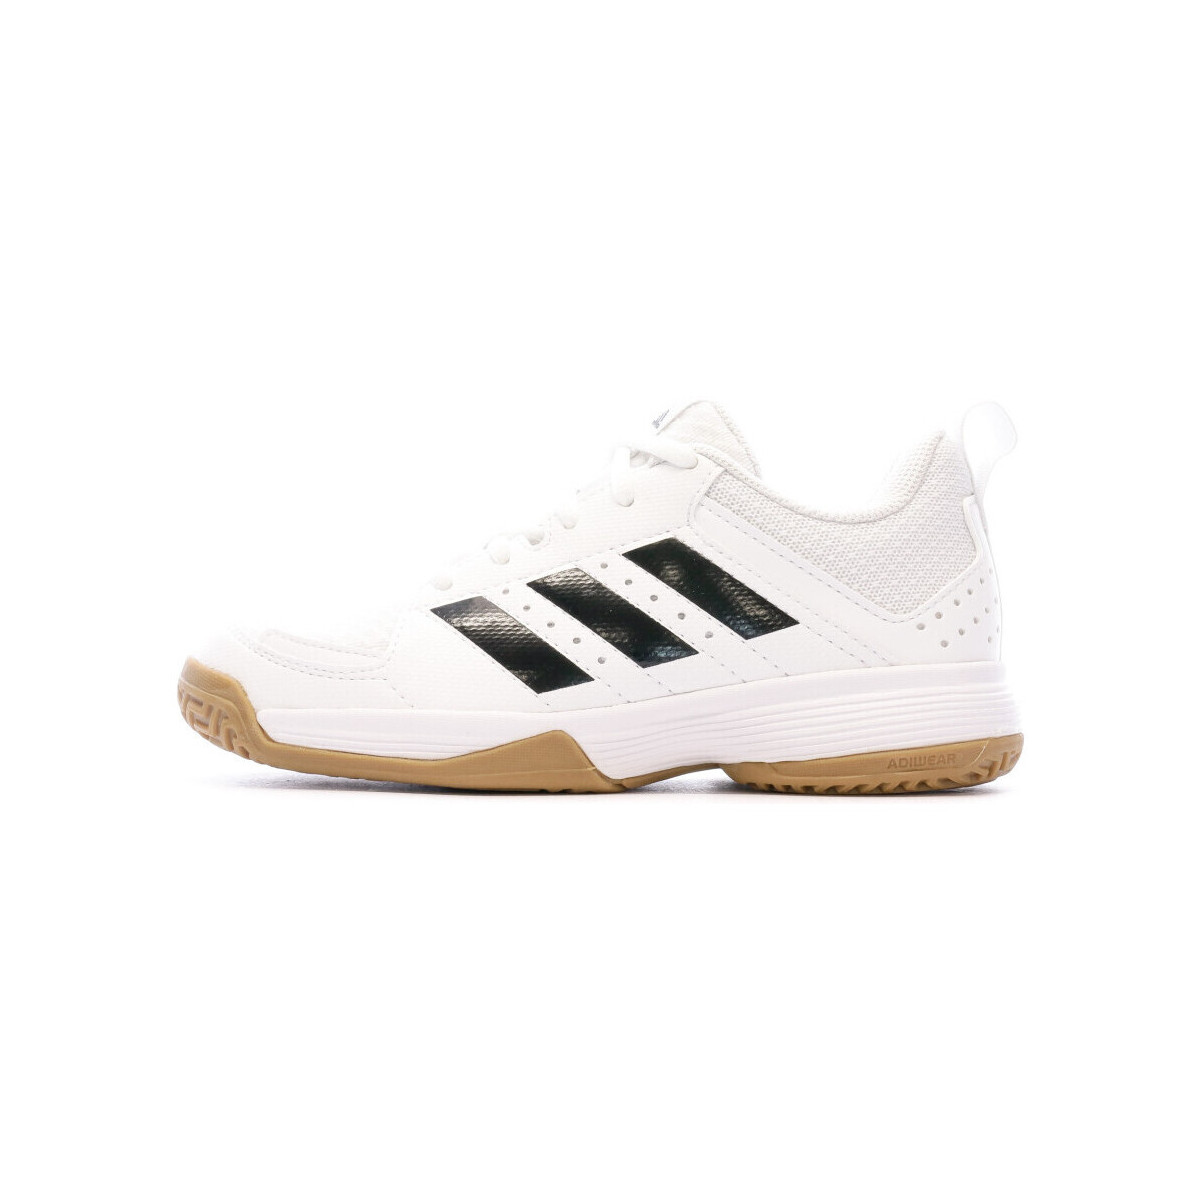 Sapatos Mulher Desportos indoor adidas Originals  Branco